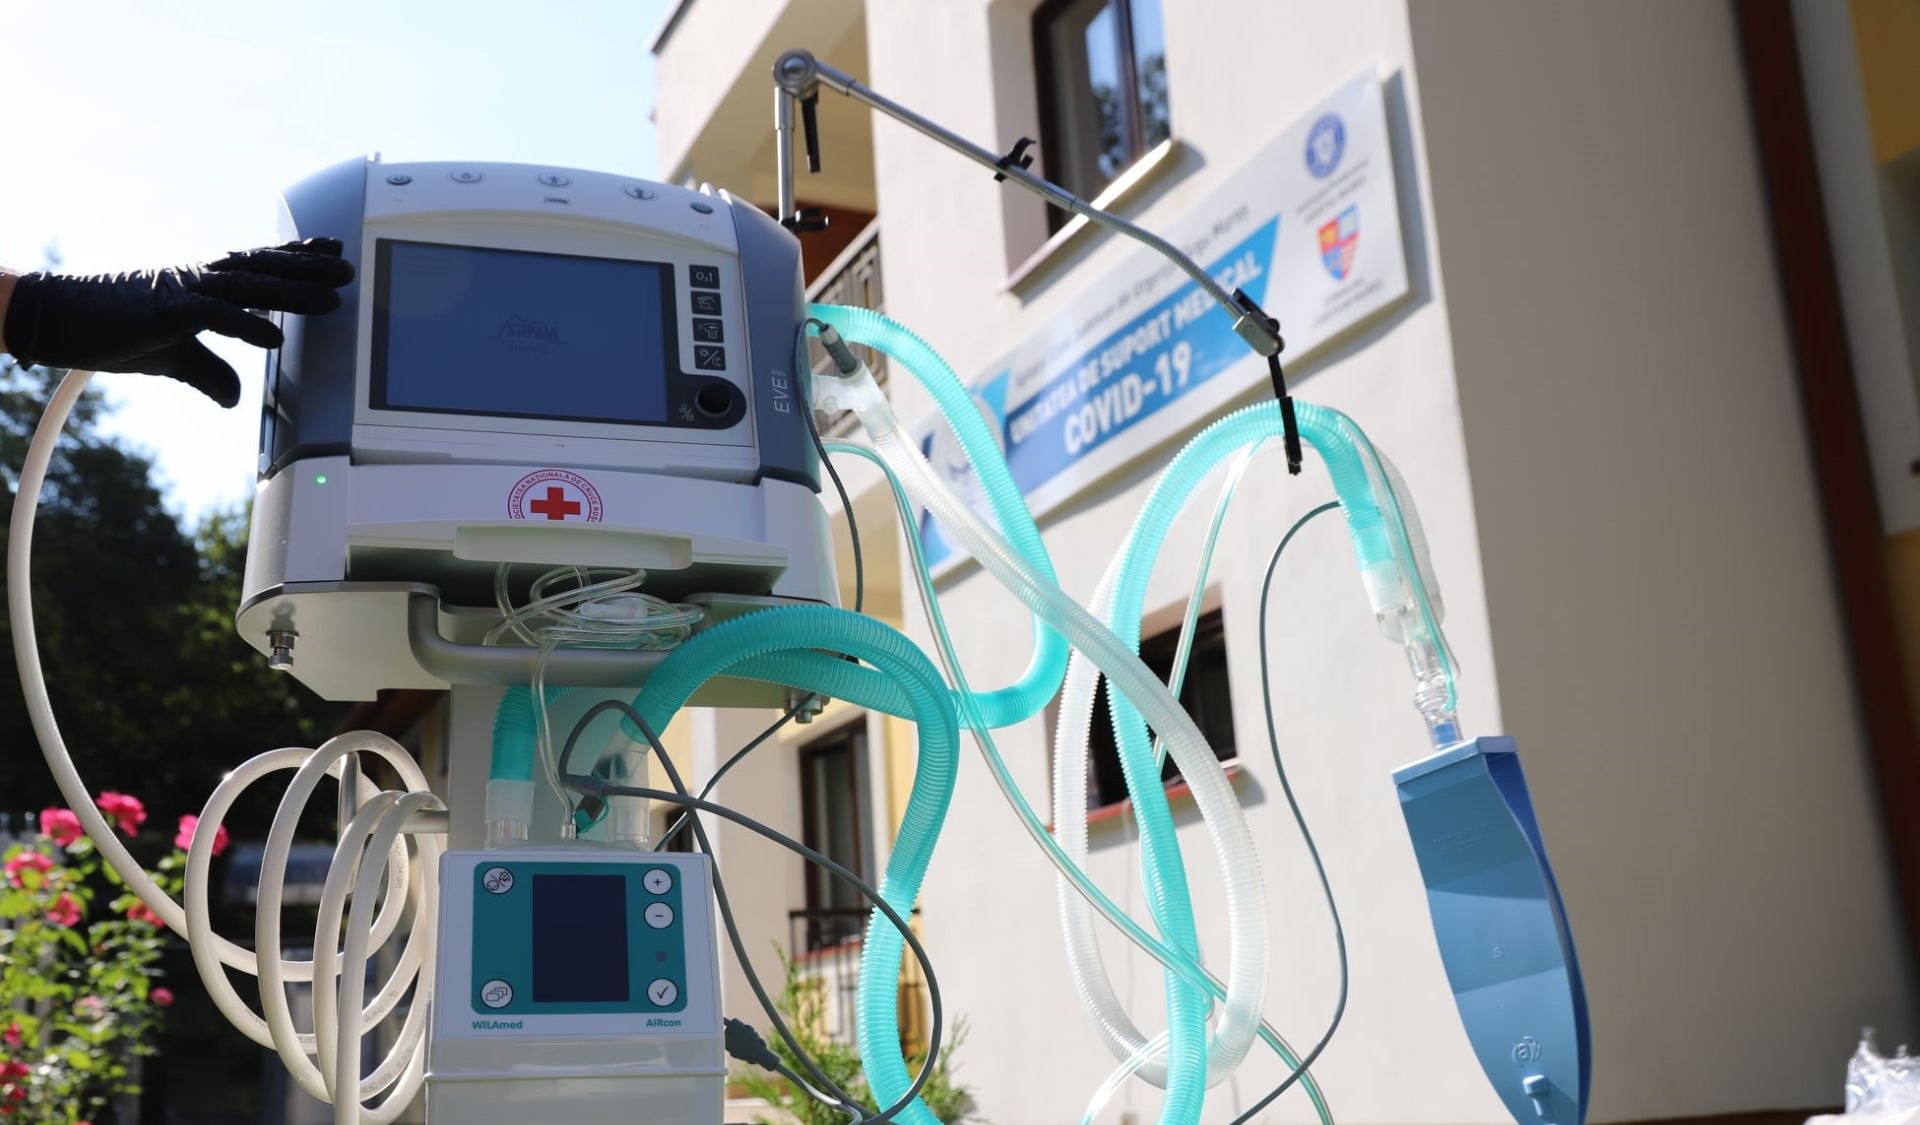 Aparat mobil de ventilație pulmonară donat Unităţii COVID-19 din Târgu Mureş